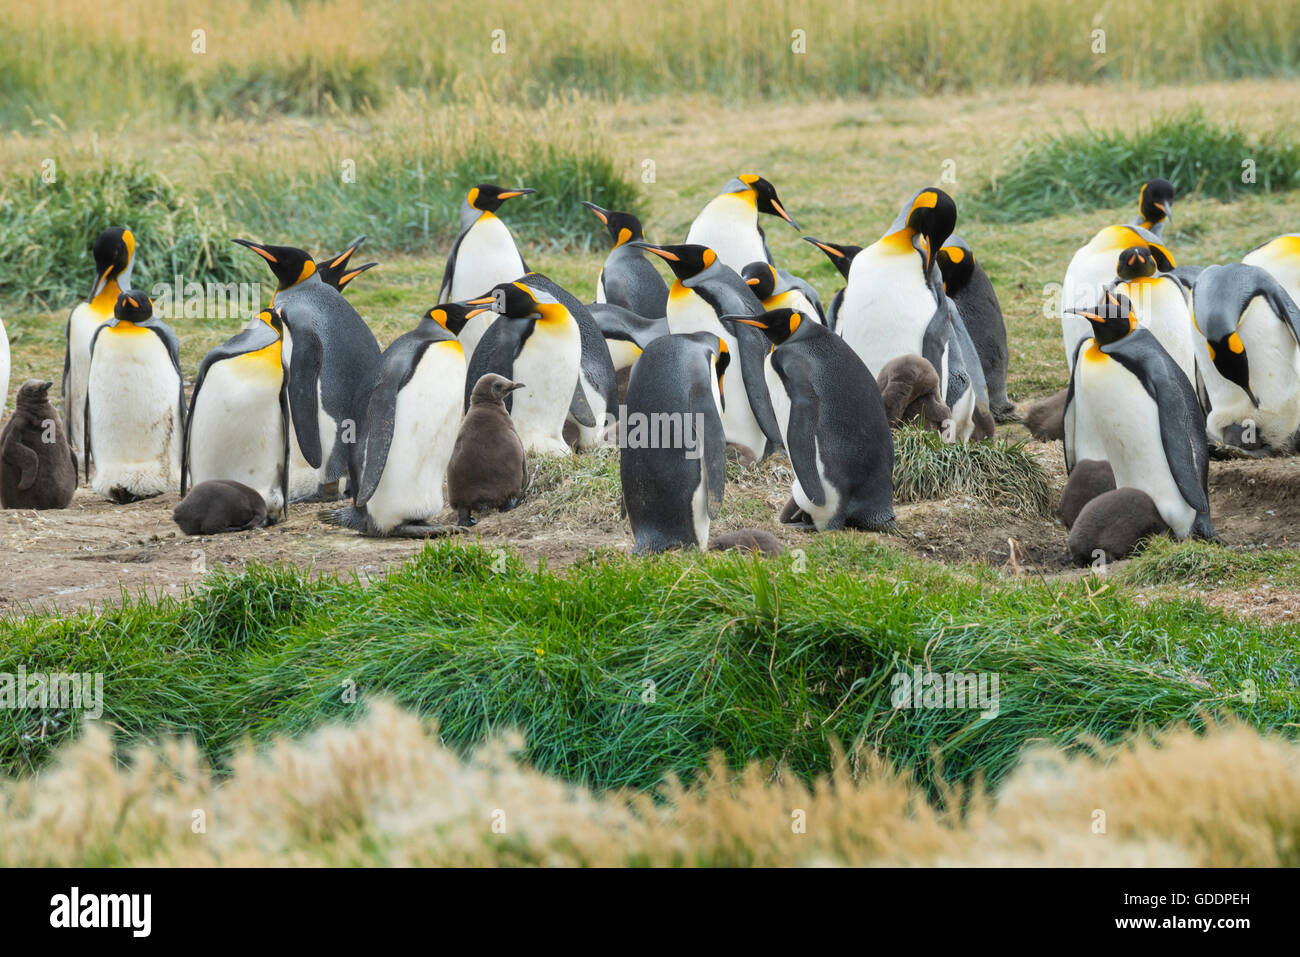 L'Amérique du Sud Chili, Terre de Feu,colonie de pingouins Banque D'Images